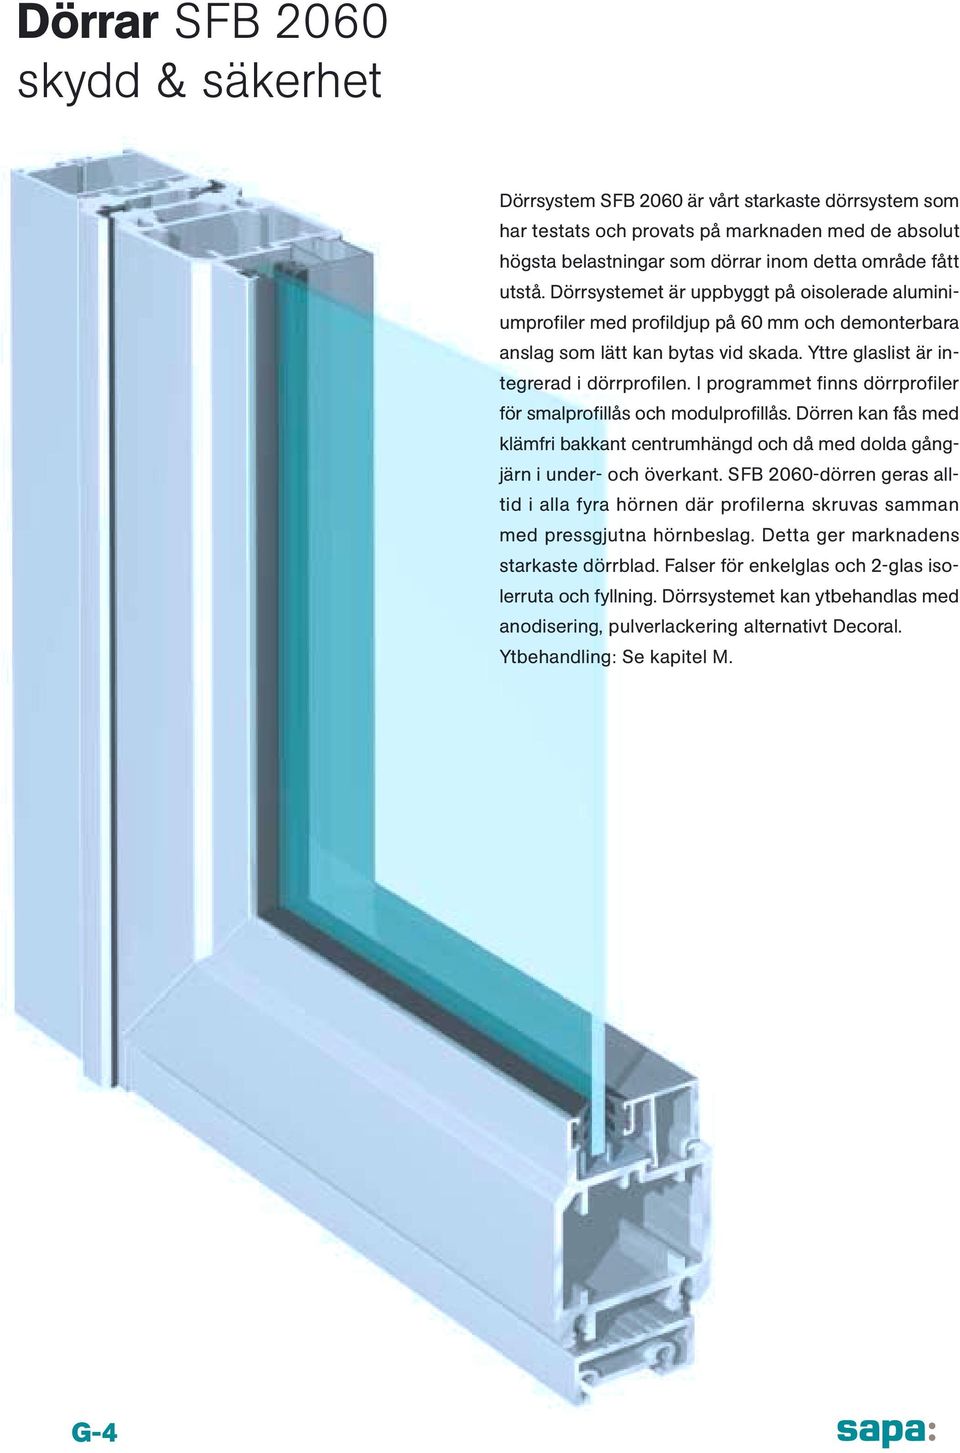 I programmet finns dörrprofiler för smalprofillås och modulprofillås. Dörren kan fås med klämfri bakkant centrumhängd och då med dolda gångjärn i under- och överkant.